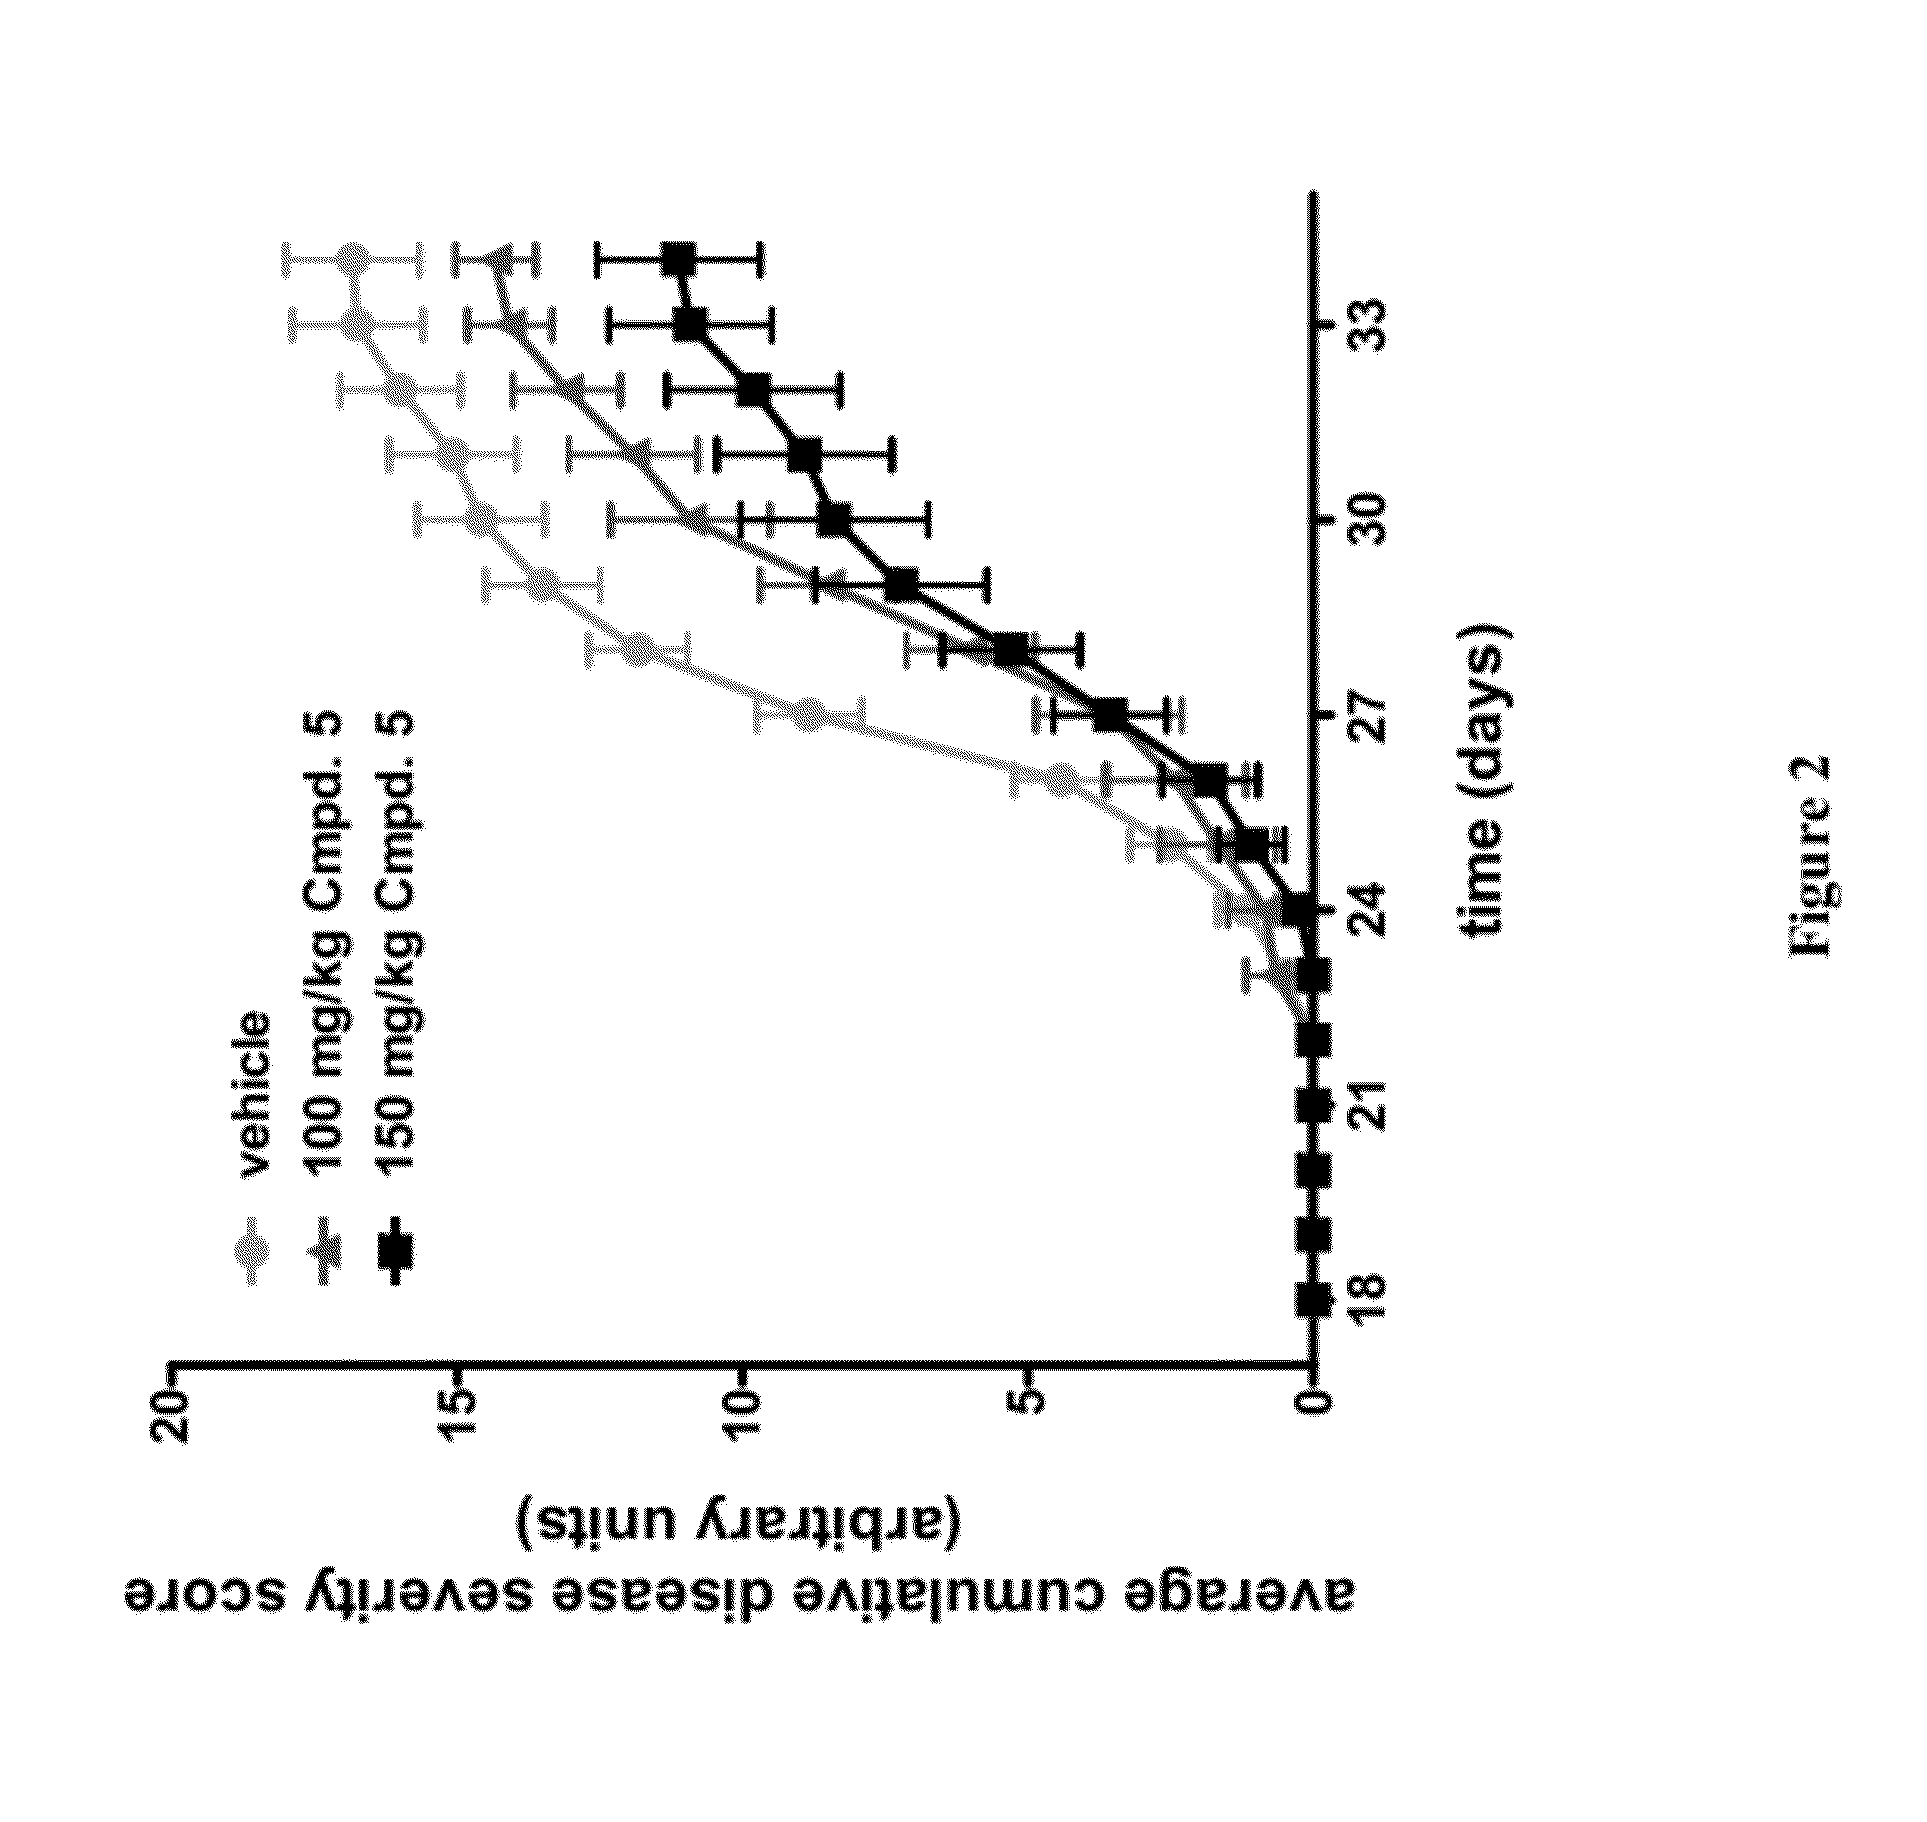 Amino-pyrimidine compounds as inhibitors of ikk epsilon and/or tbk1